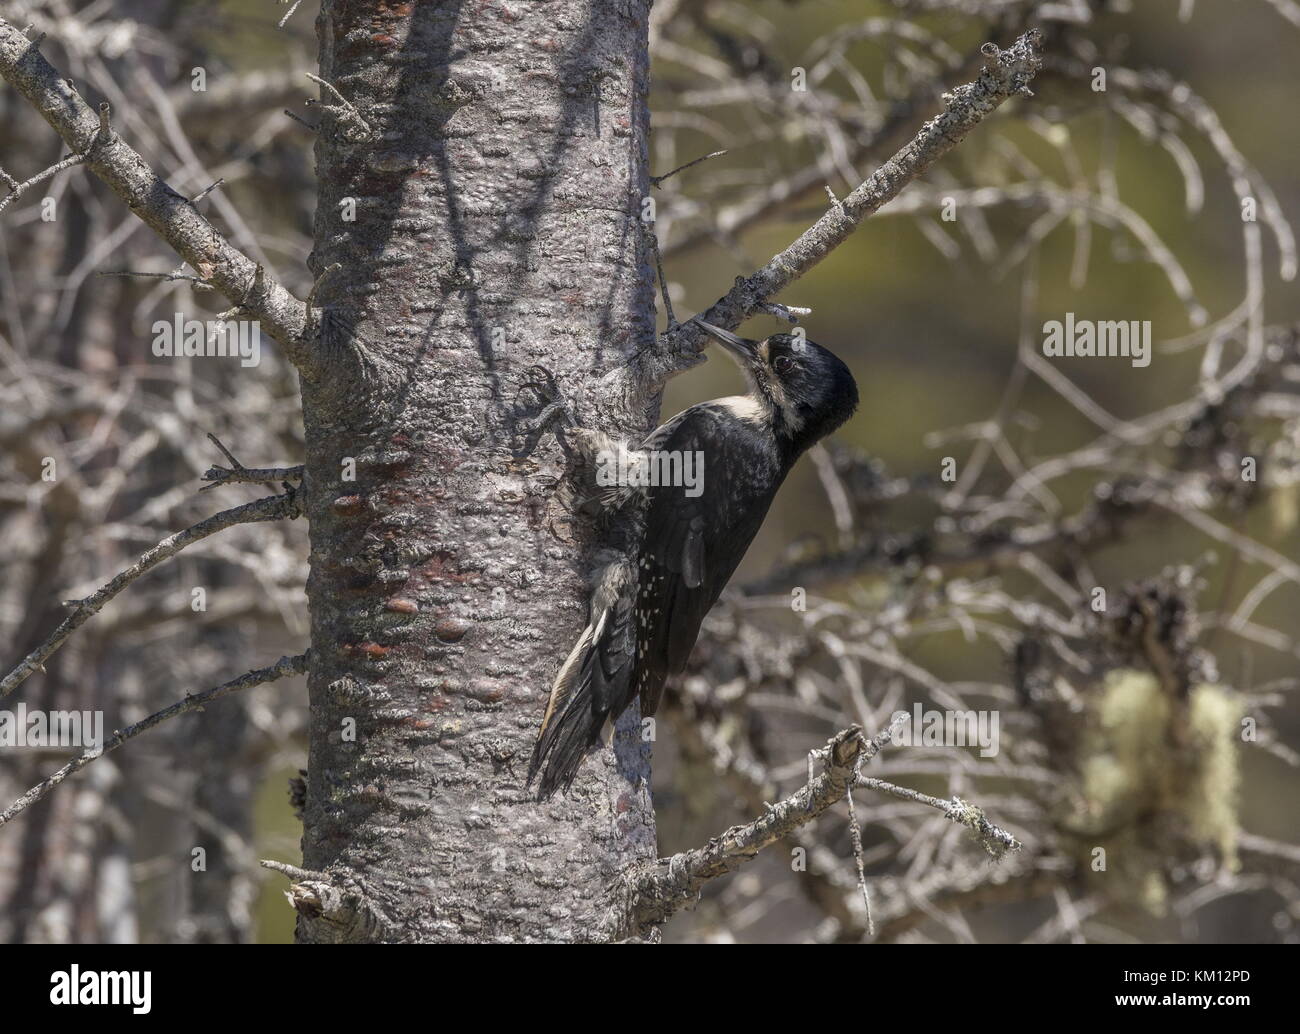 Femmina nera-backed picchio, picoides arcticus, con connettore maschio di tipo annidato nel nido, Terranova. Foto Stock